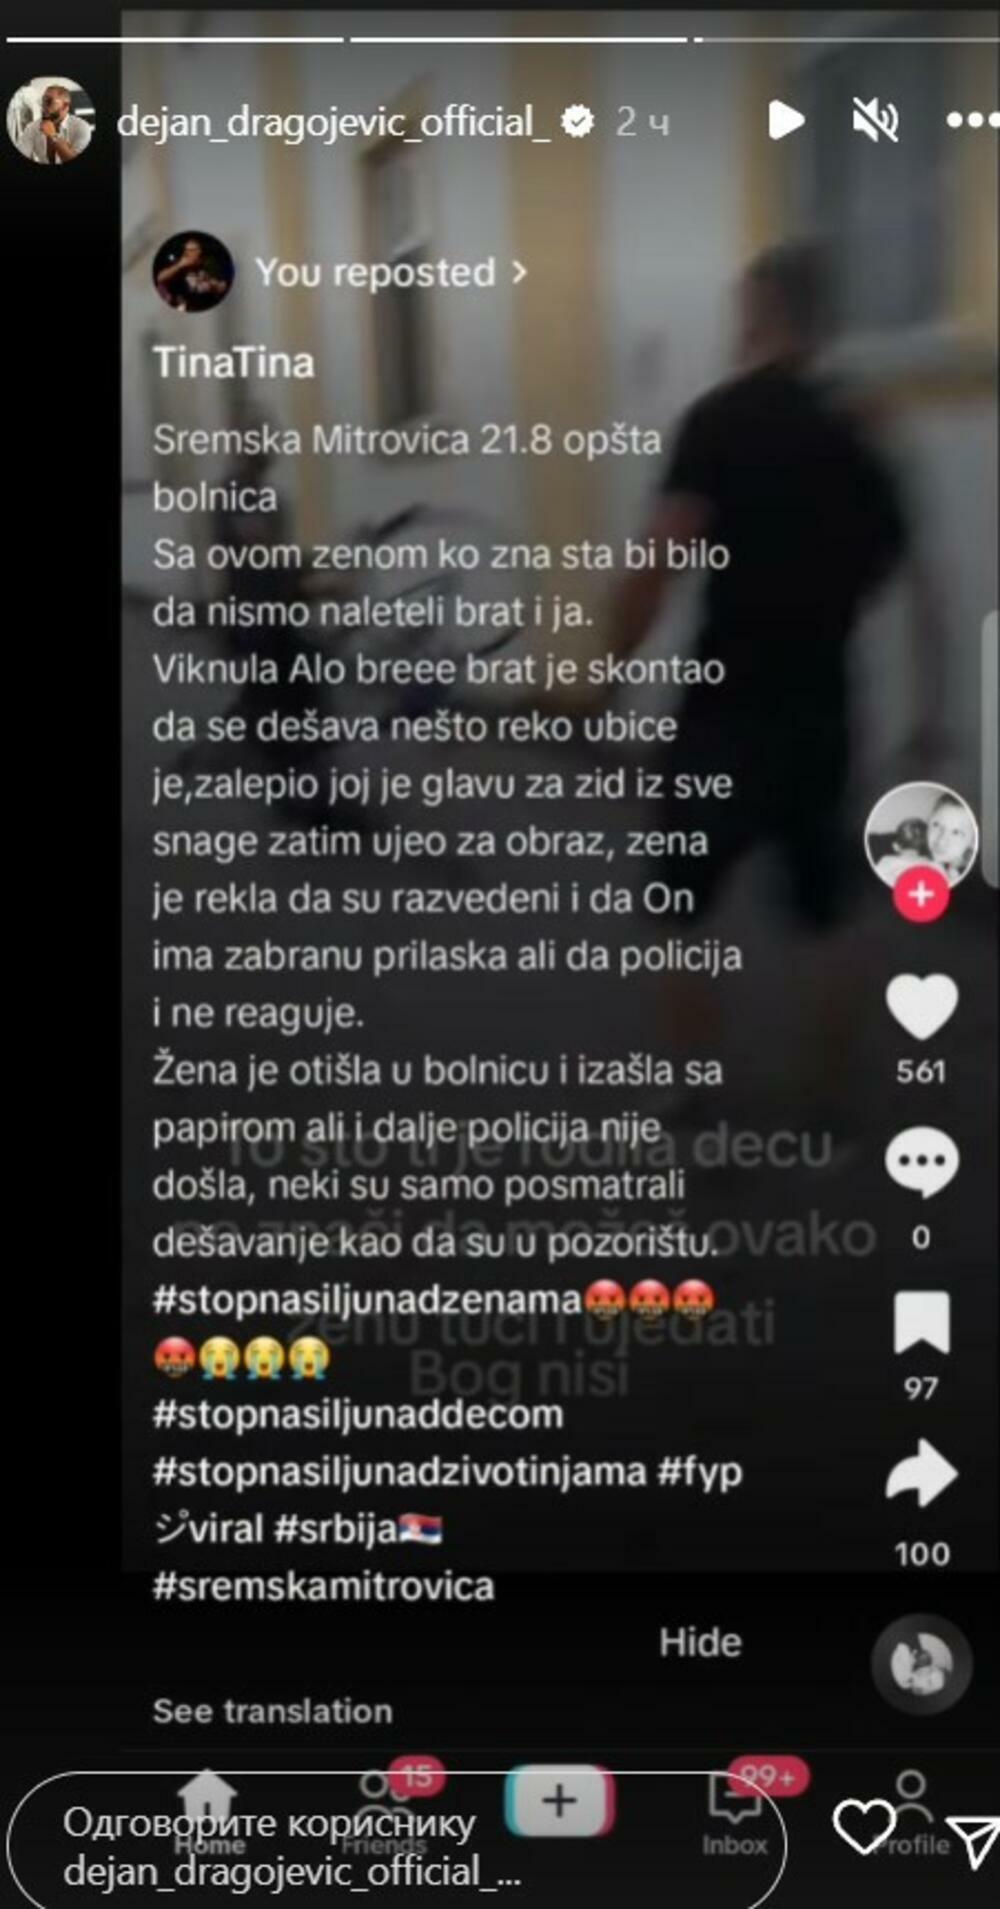 Dejan Dragojević, pobednik rijaliti programa Zadruga, podelio je šokantan i uznemirujući video nasilja nad jednom ženom u Sremskoj Mitrovici